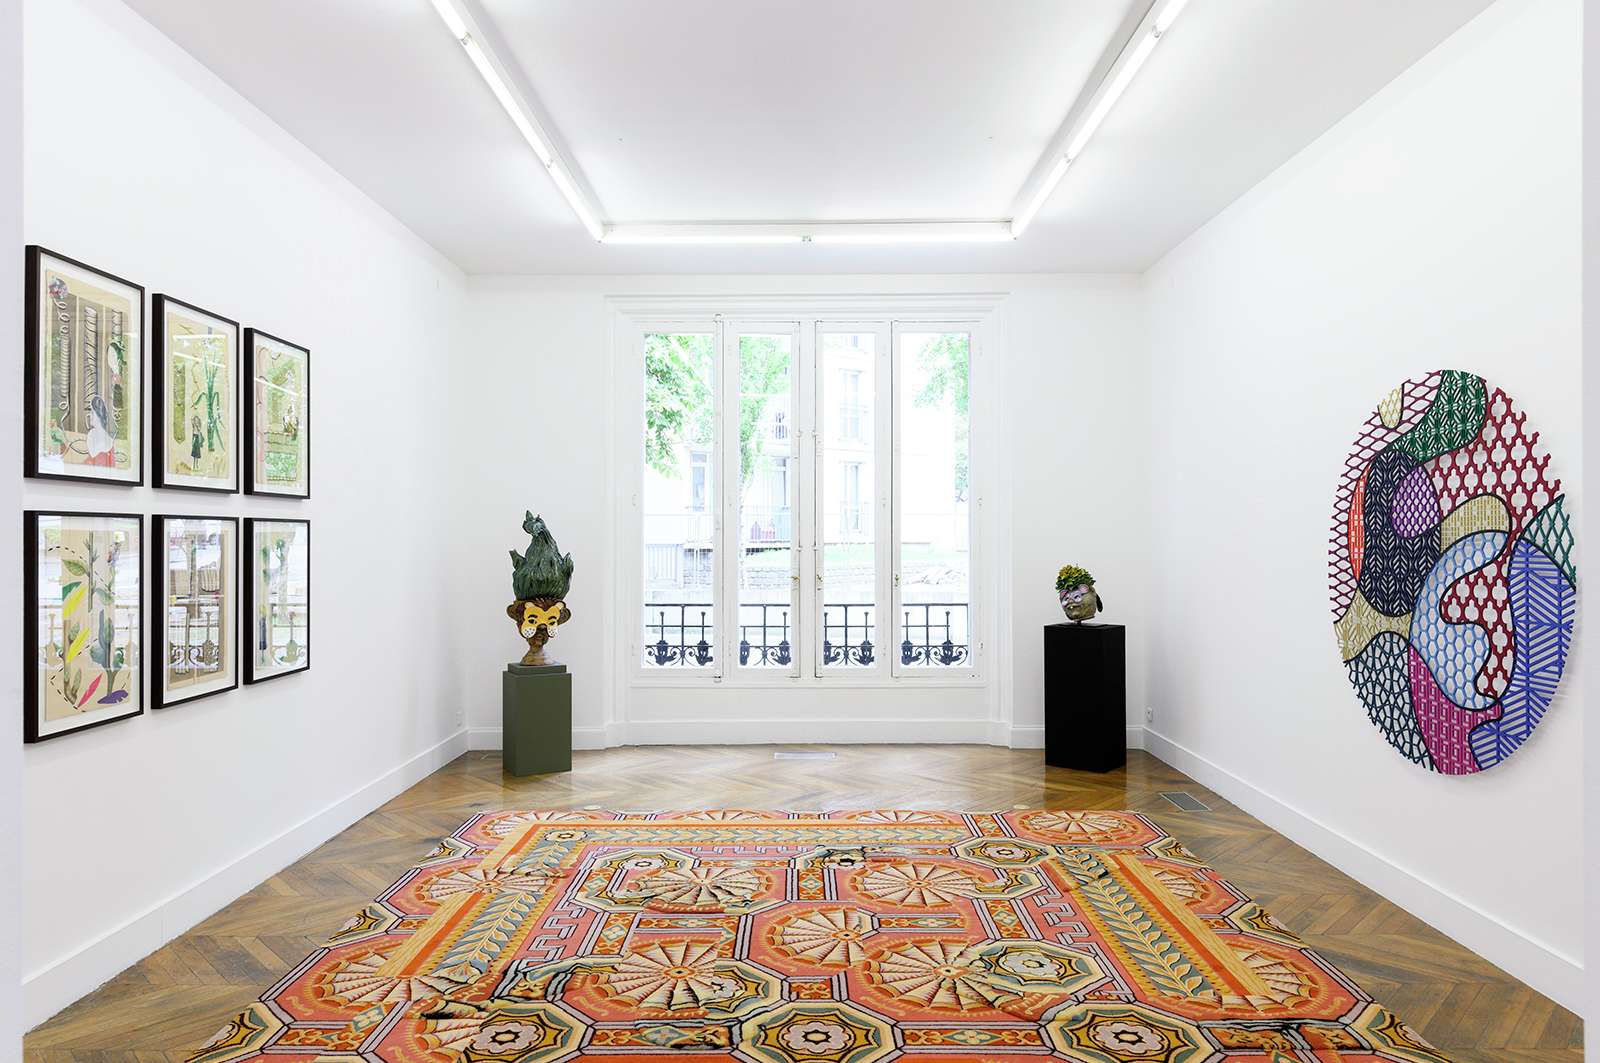 Sébastien Gouju & Hippolyte Hentgen, Le Dandy des gadoues (group)  - La Galerie - Centre d'art contemporain - Noisy-le-Sec 14 septembre  — 14 décembre 2019